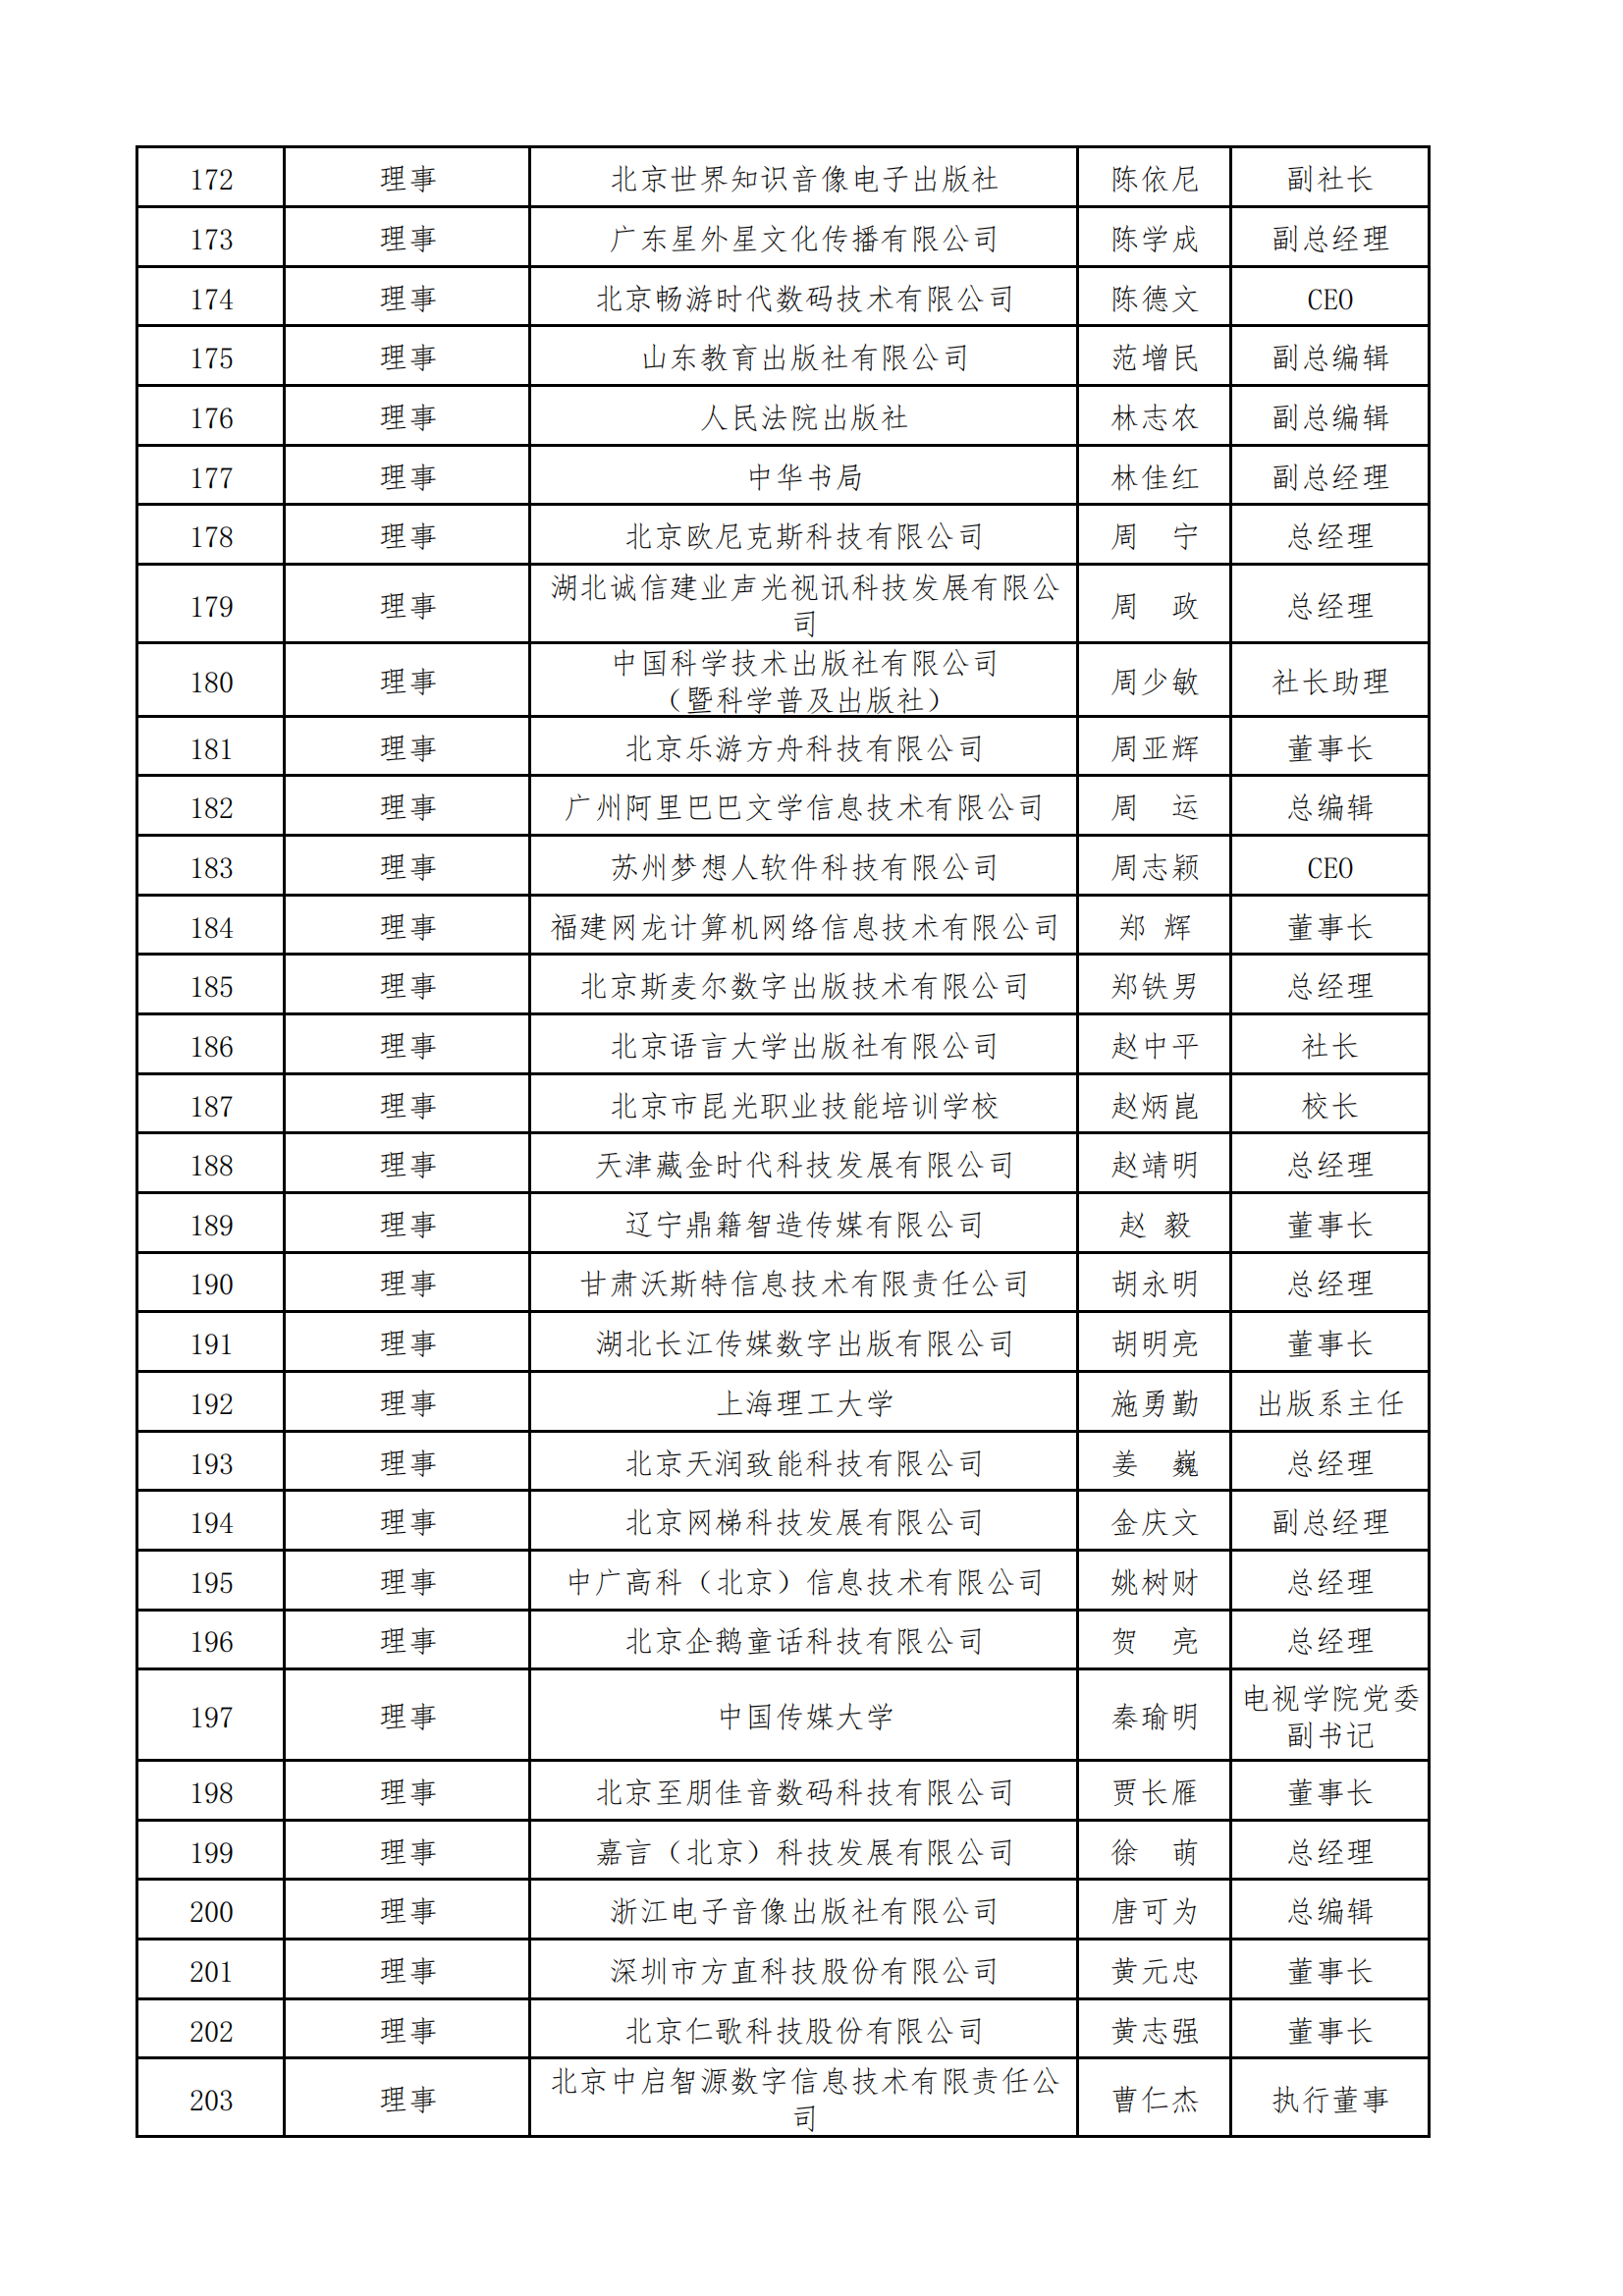 中國音像與數字出版協會第五屆理事會名錄_06.png